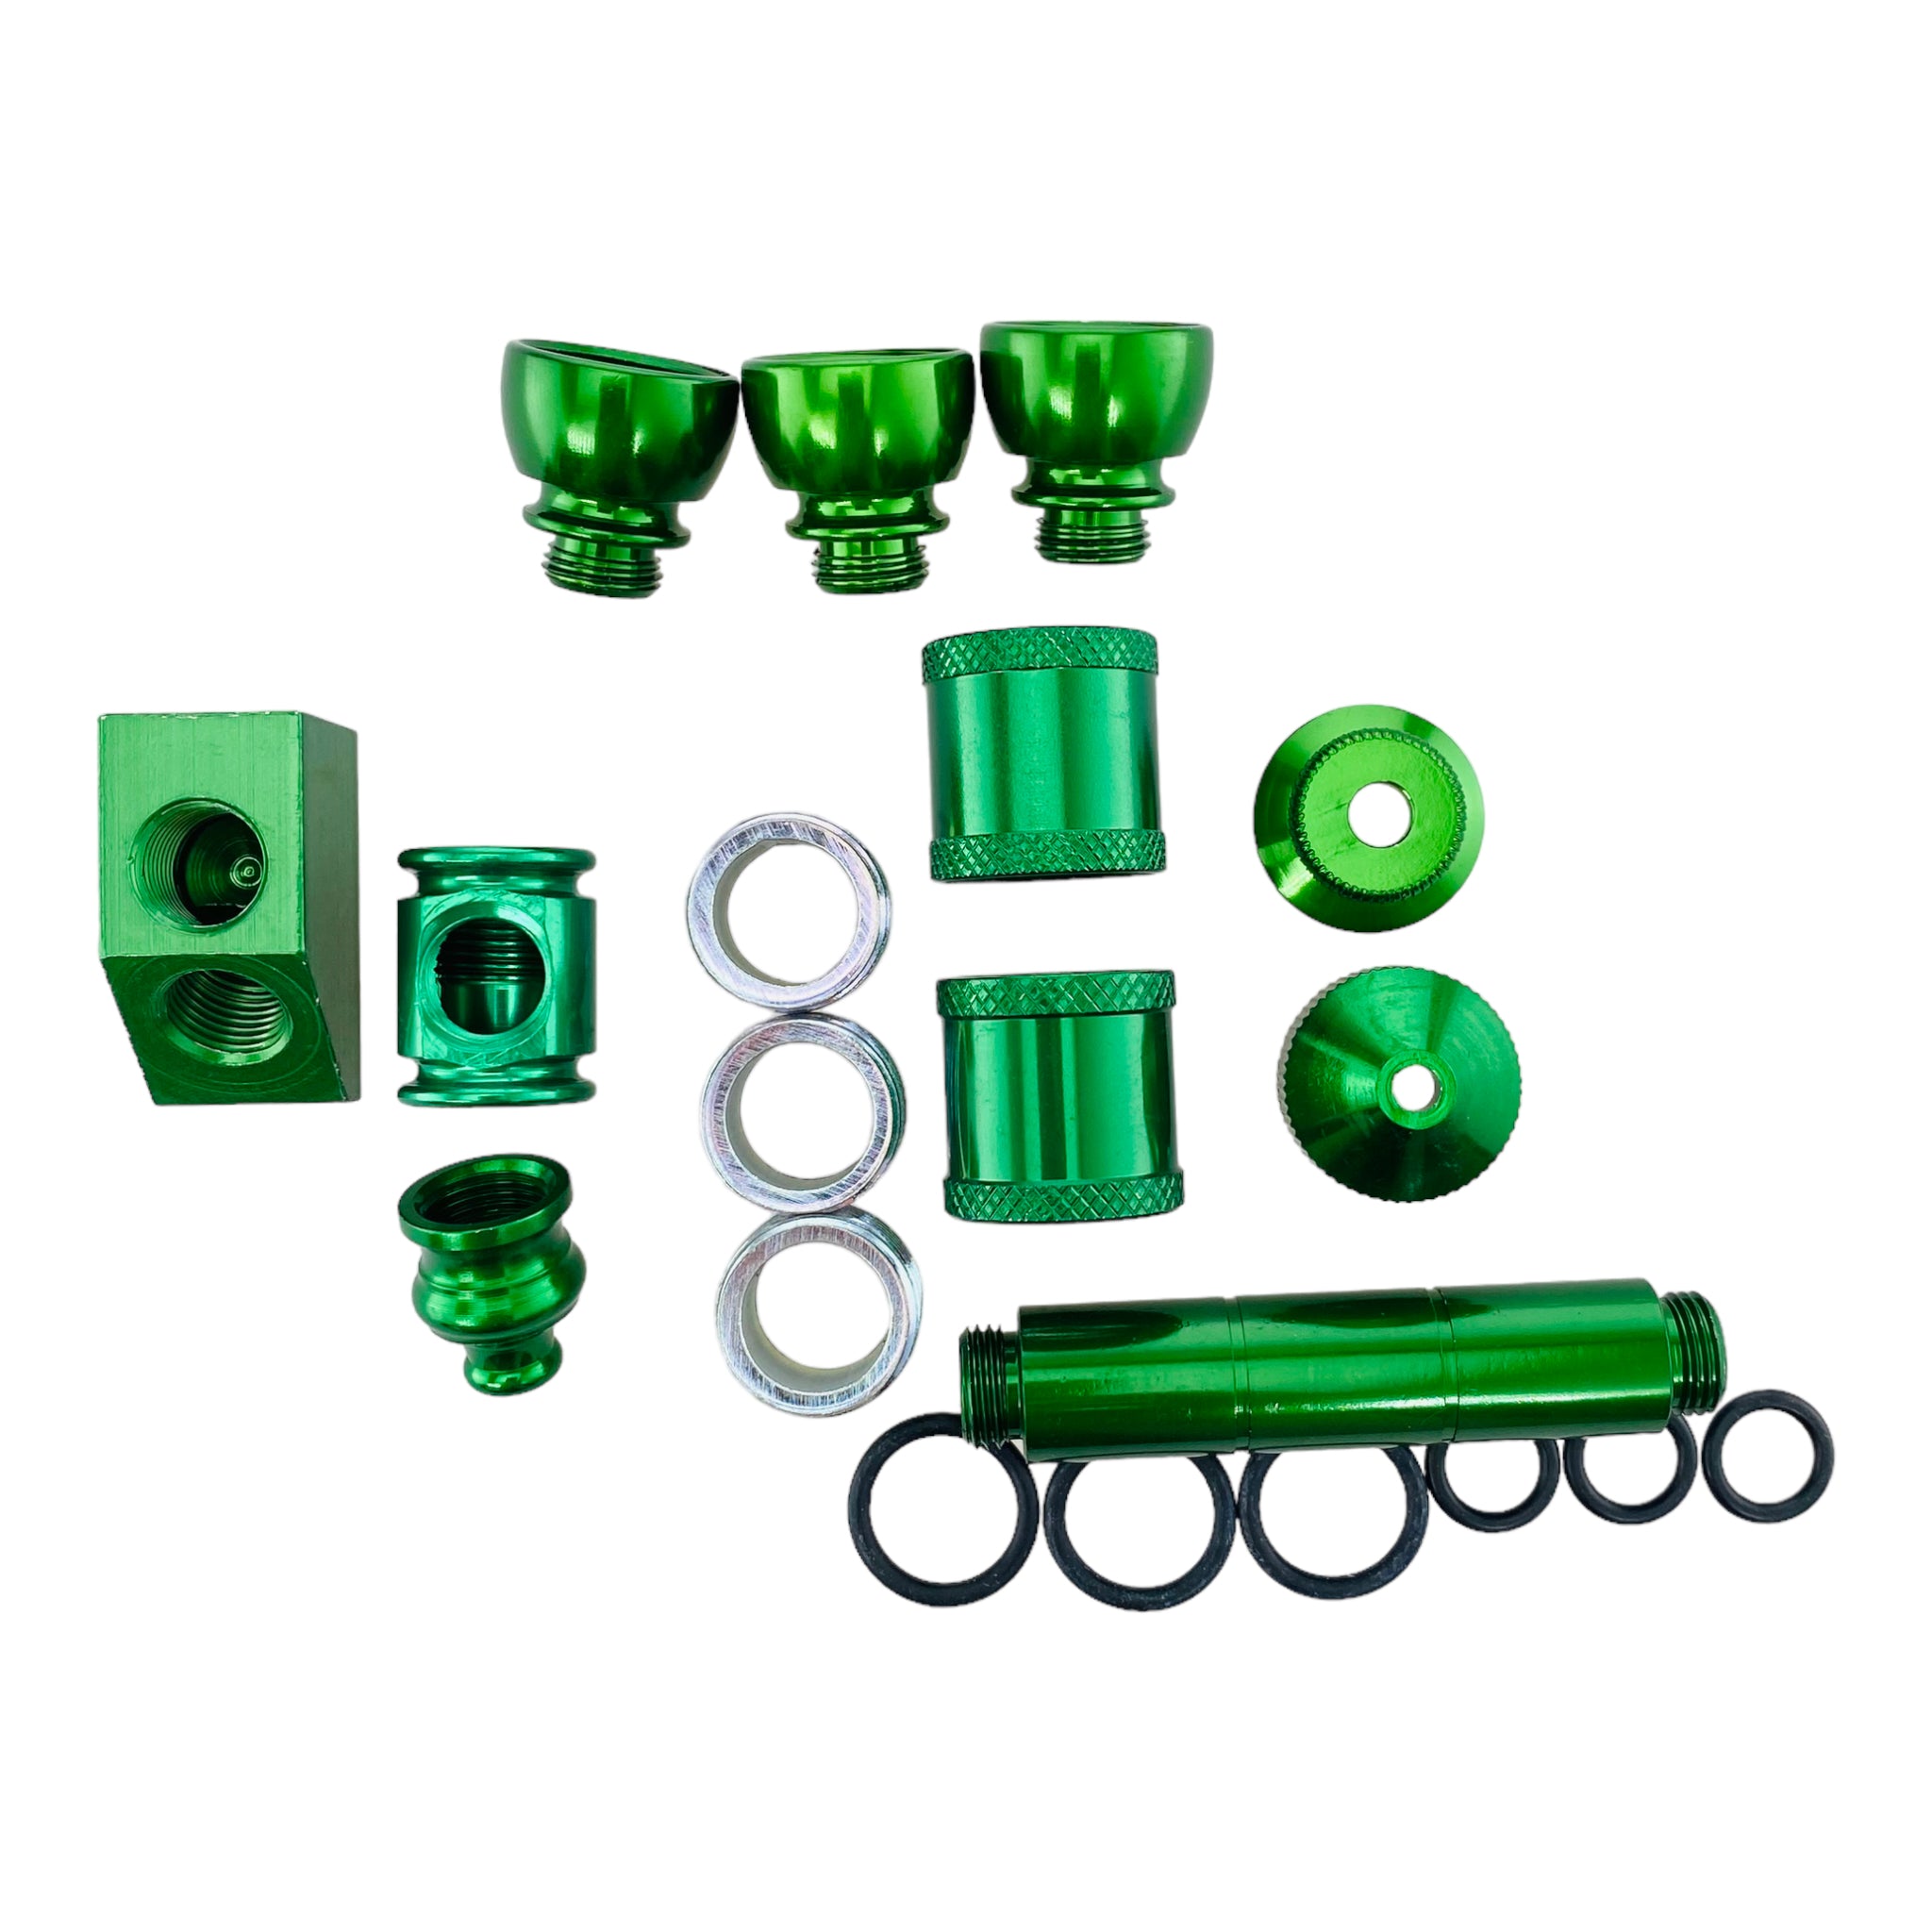 Aluminum Metal Pipe Makers Kit in Green